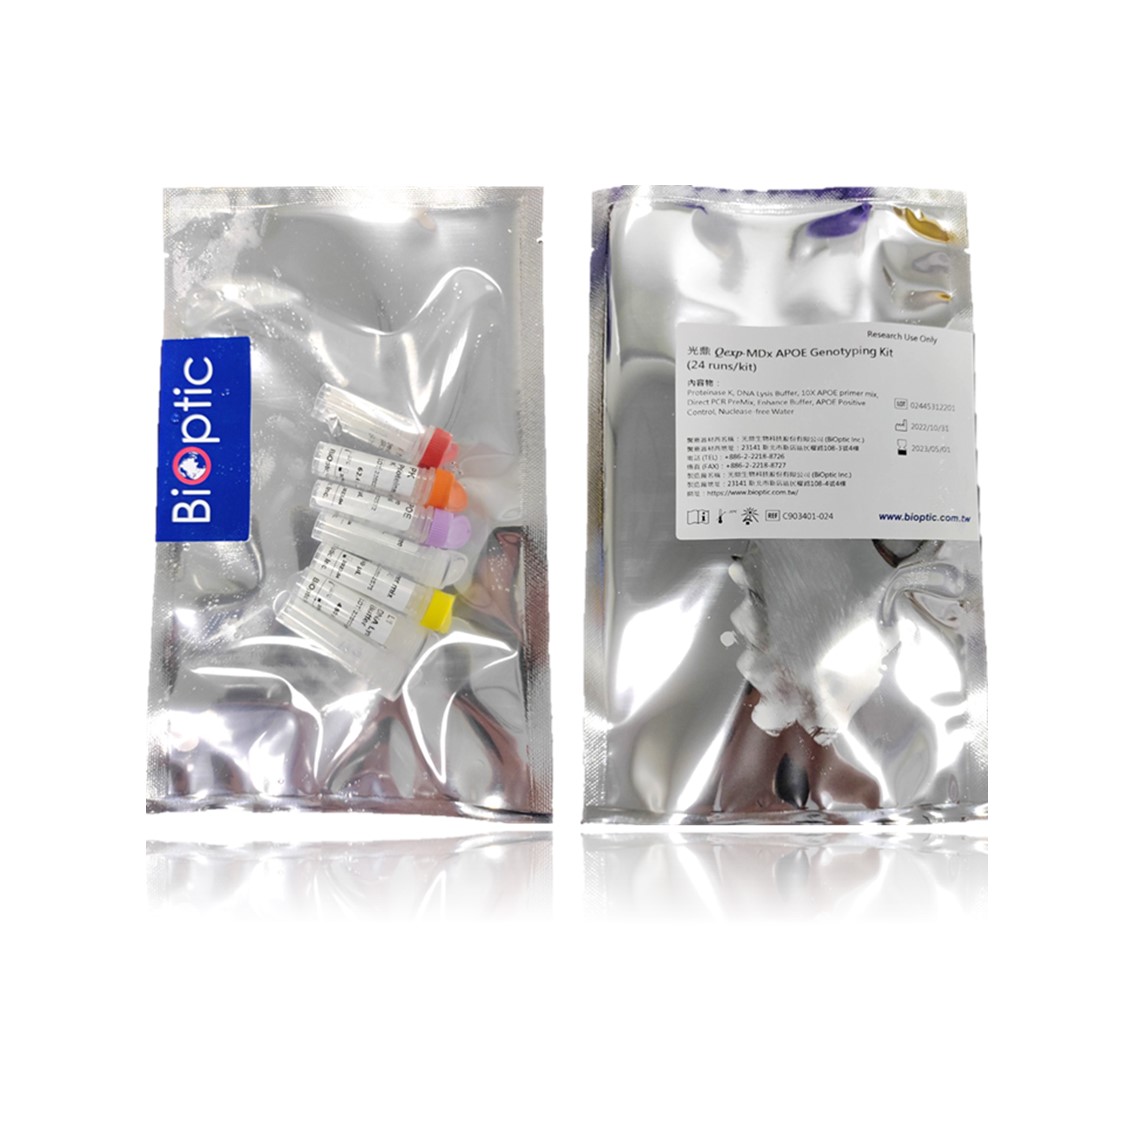 Qexp-MDx 載脂蛋白 E 基因分型試劑盒